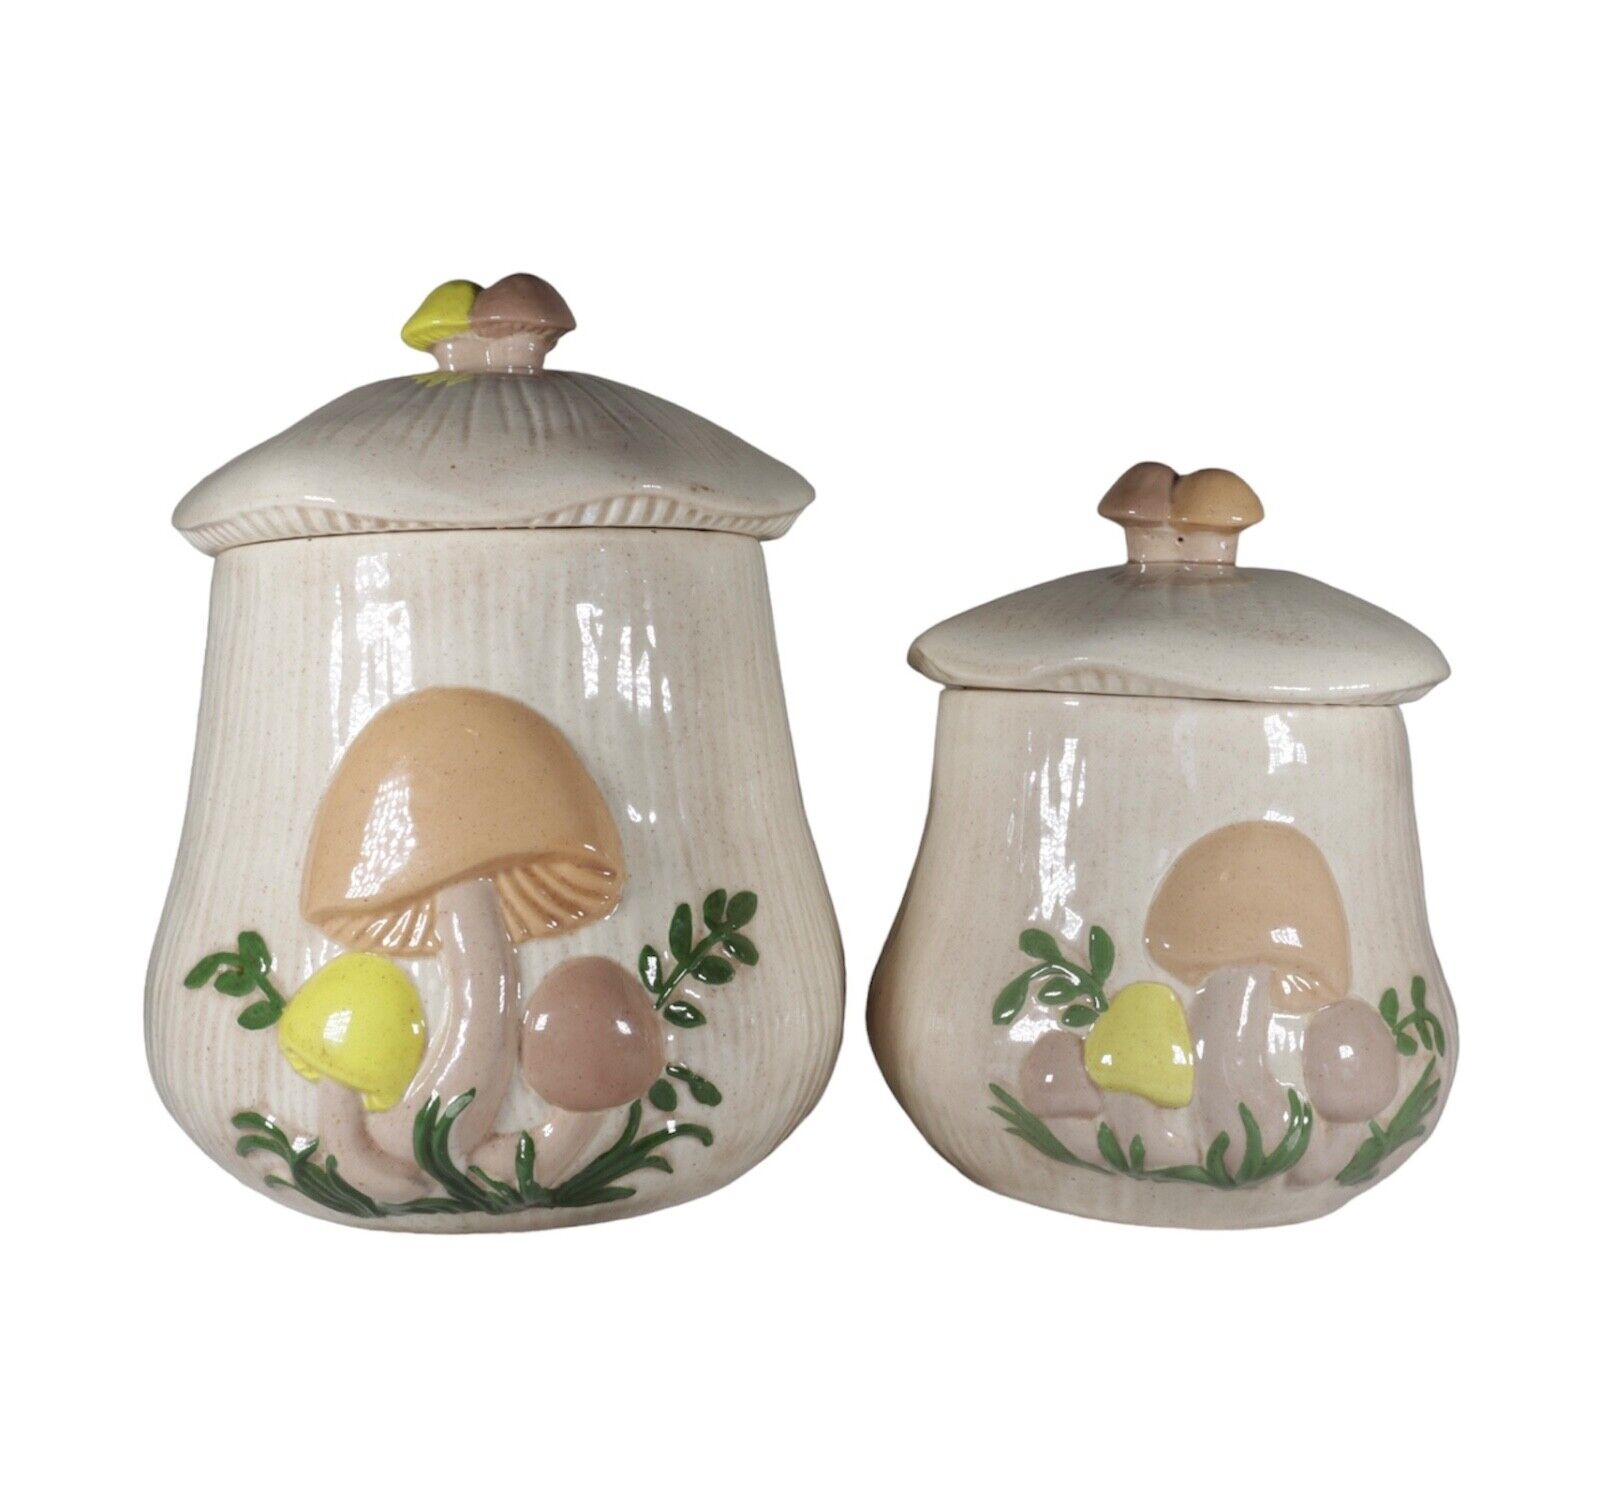 Ceramic Pottery Mushroom Cookie Jar Set of 2 - 9.5